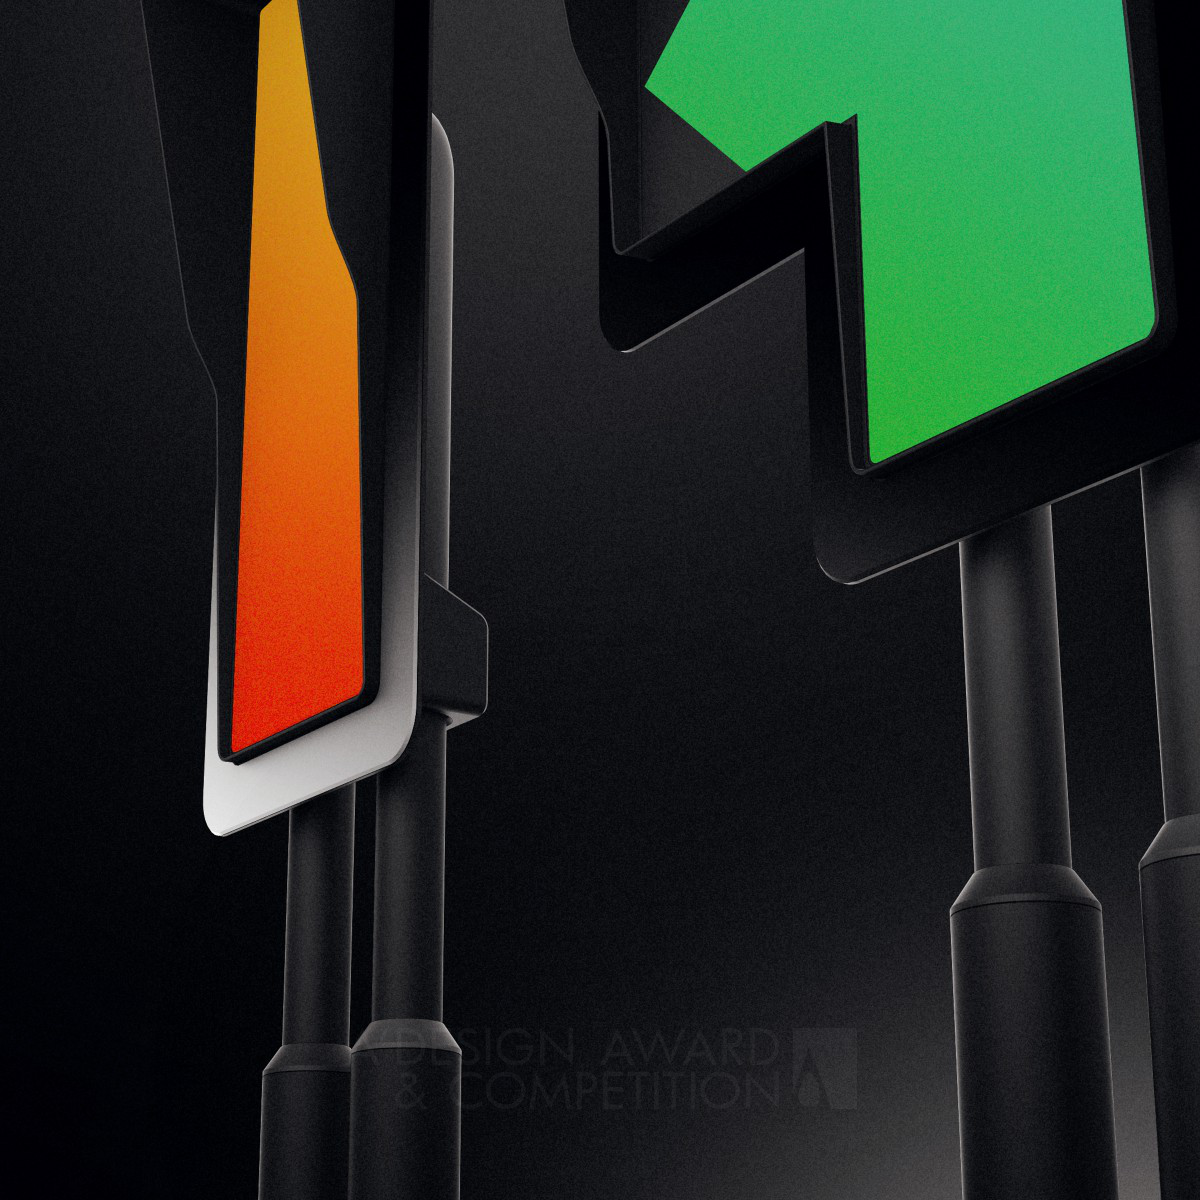 Traffic Light System <b>Managing optimisation for Traffic Lights